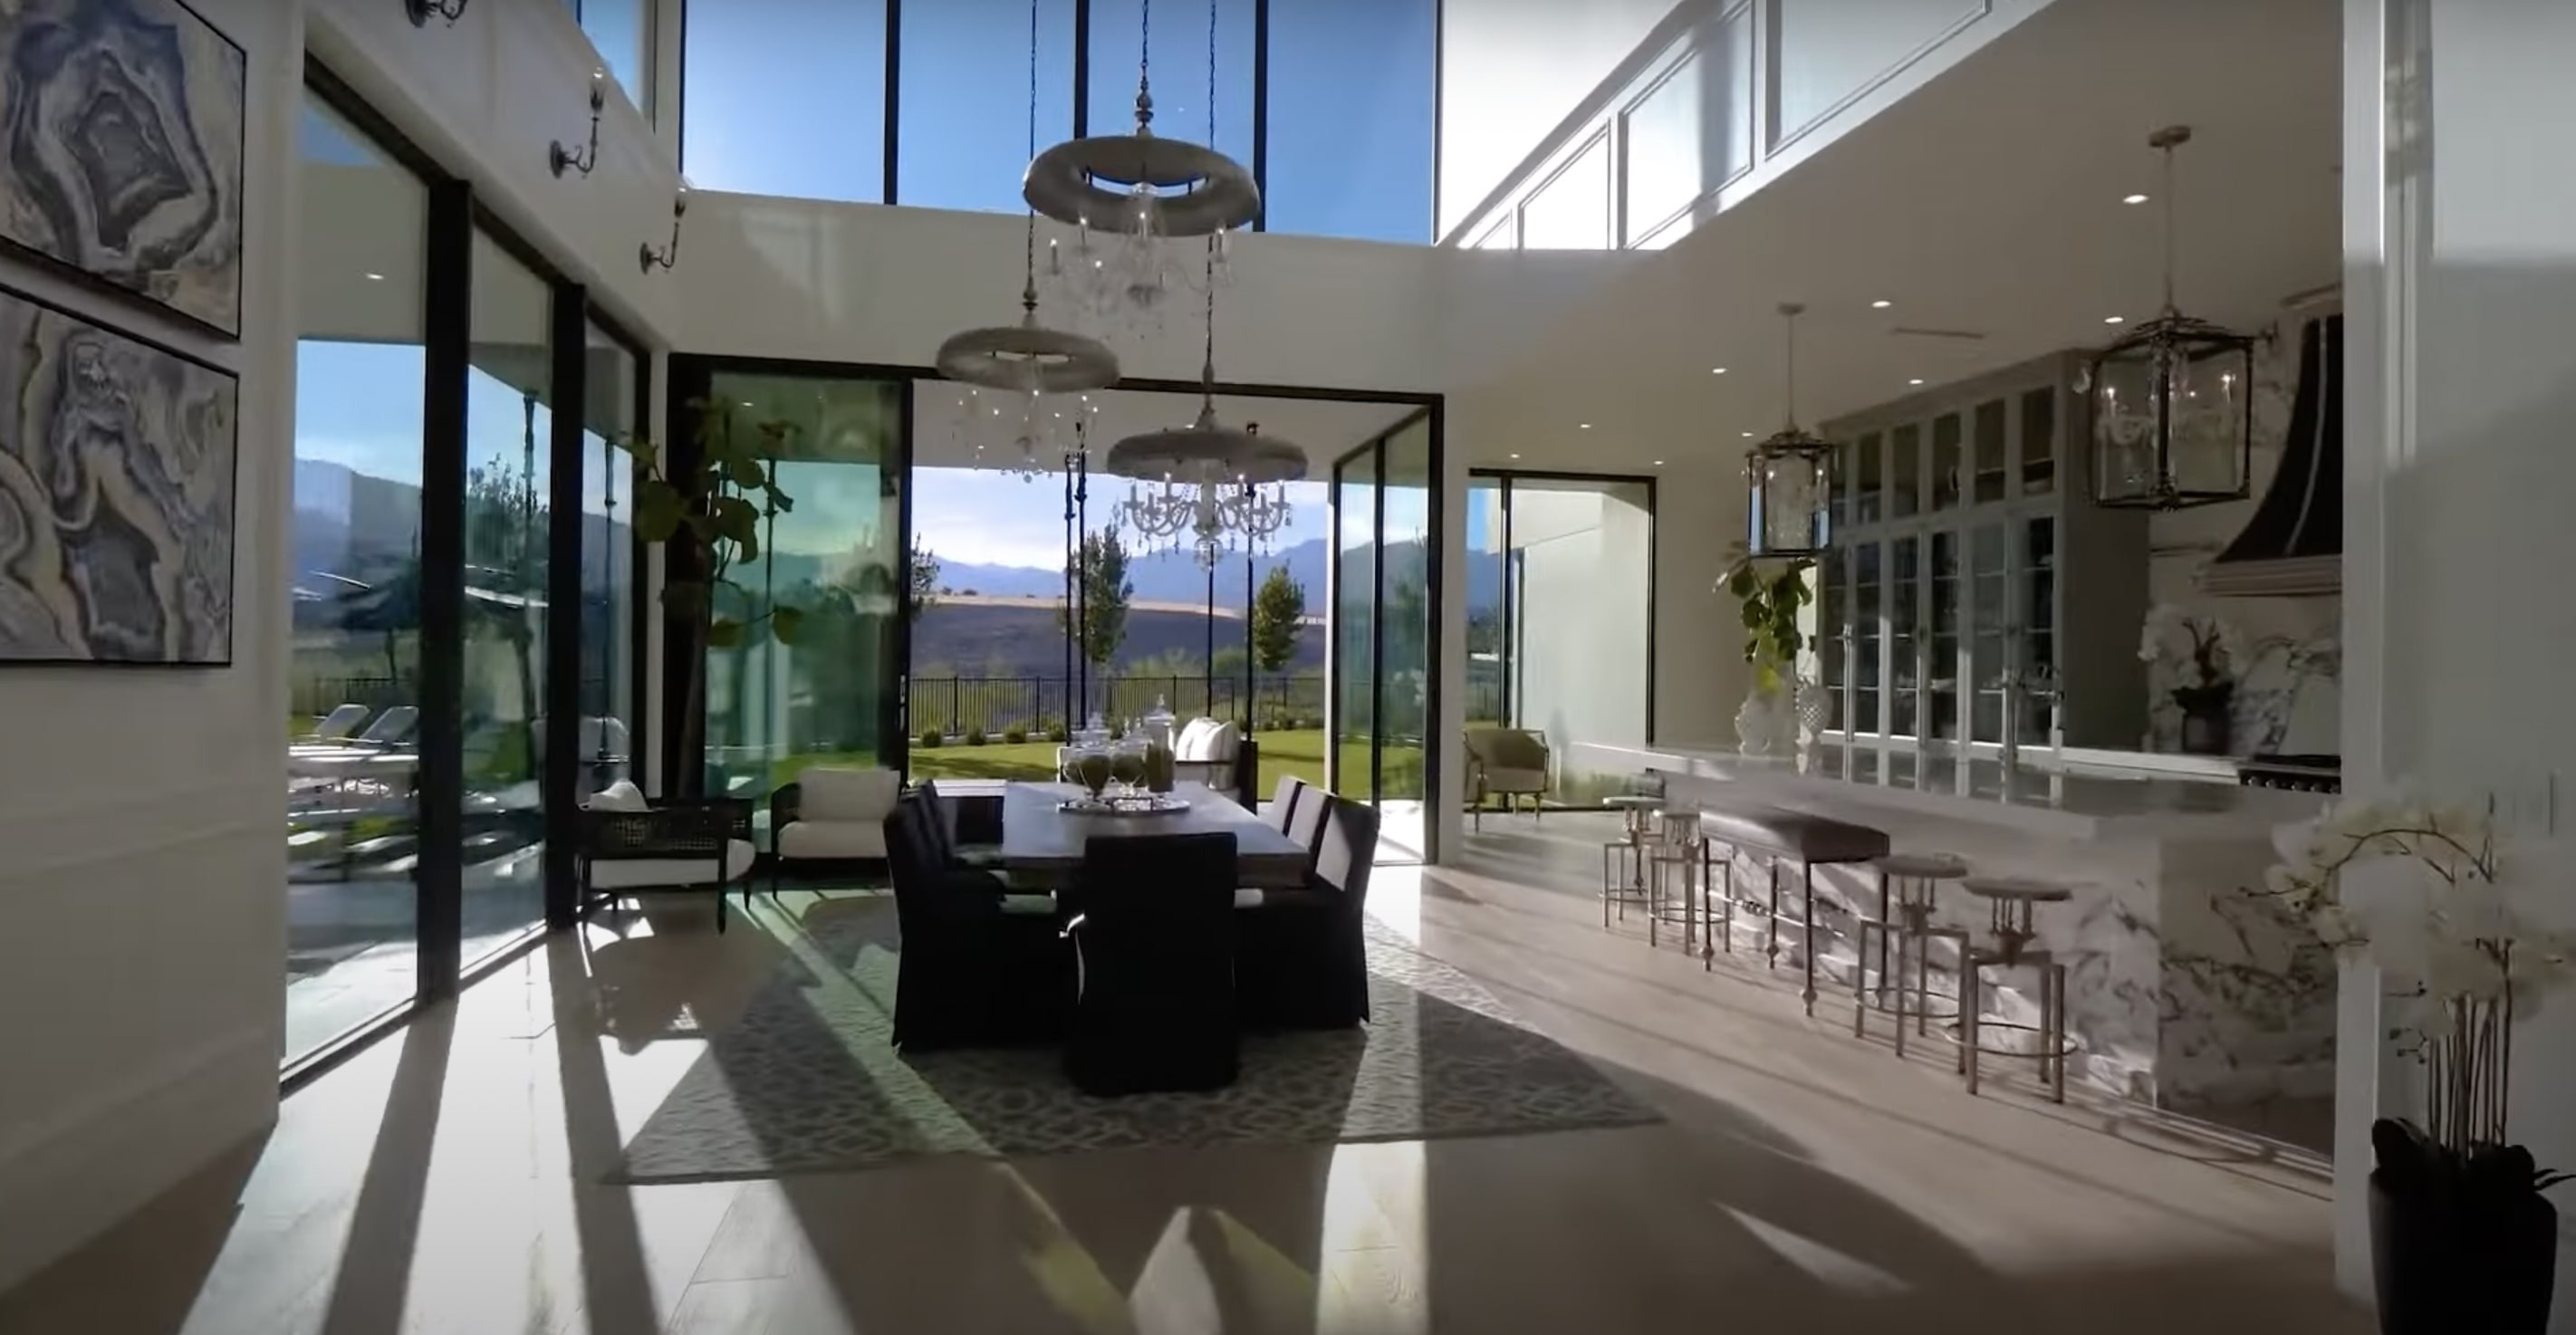 Maison de Mark Wahlberg et Rhea Durham vue intérieure de leur salle à manger à Las Vegas, Nevada | Source : YouTube@PropertyReview